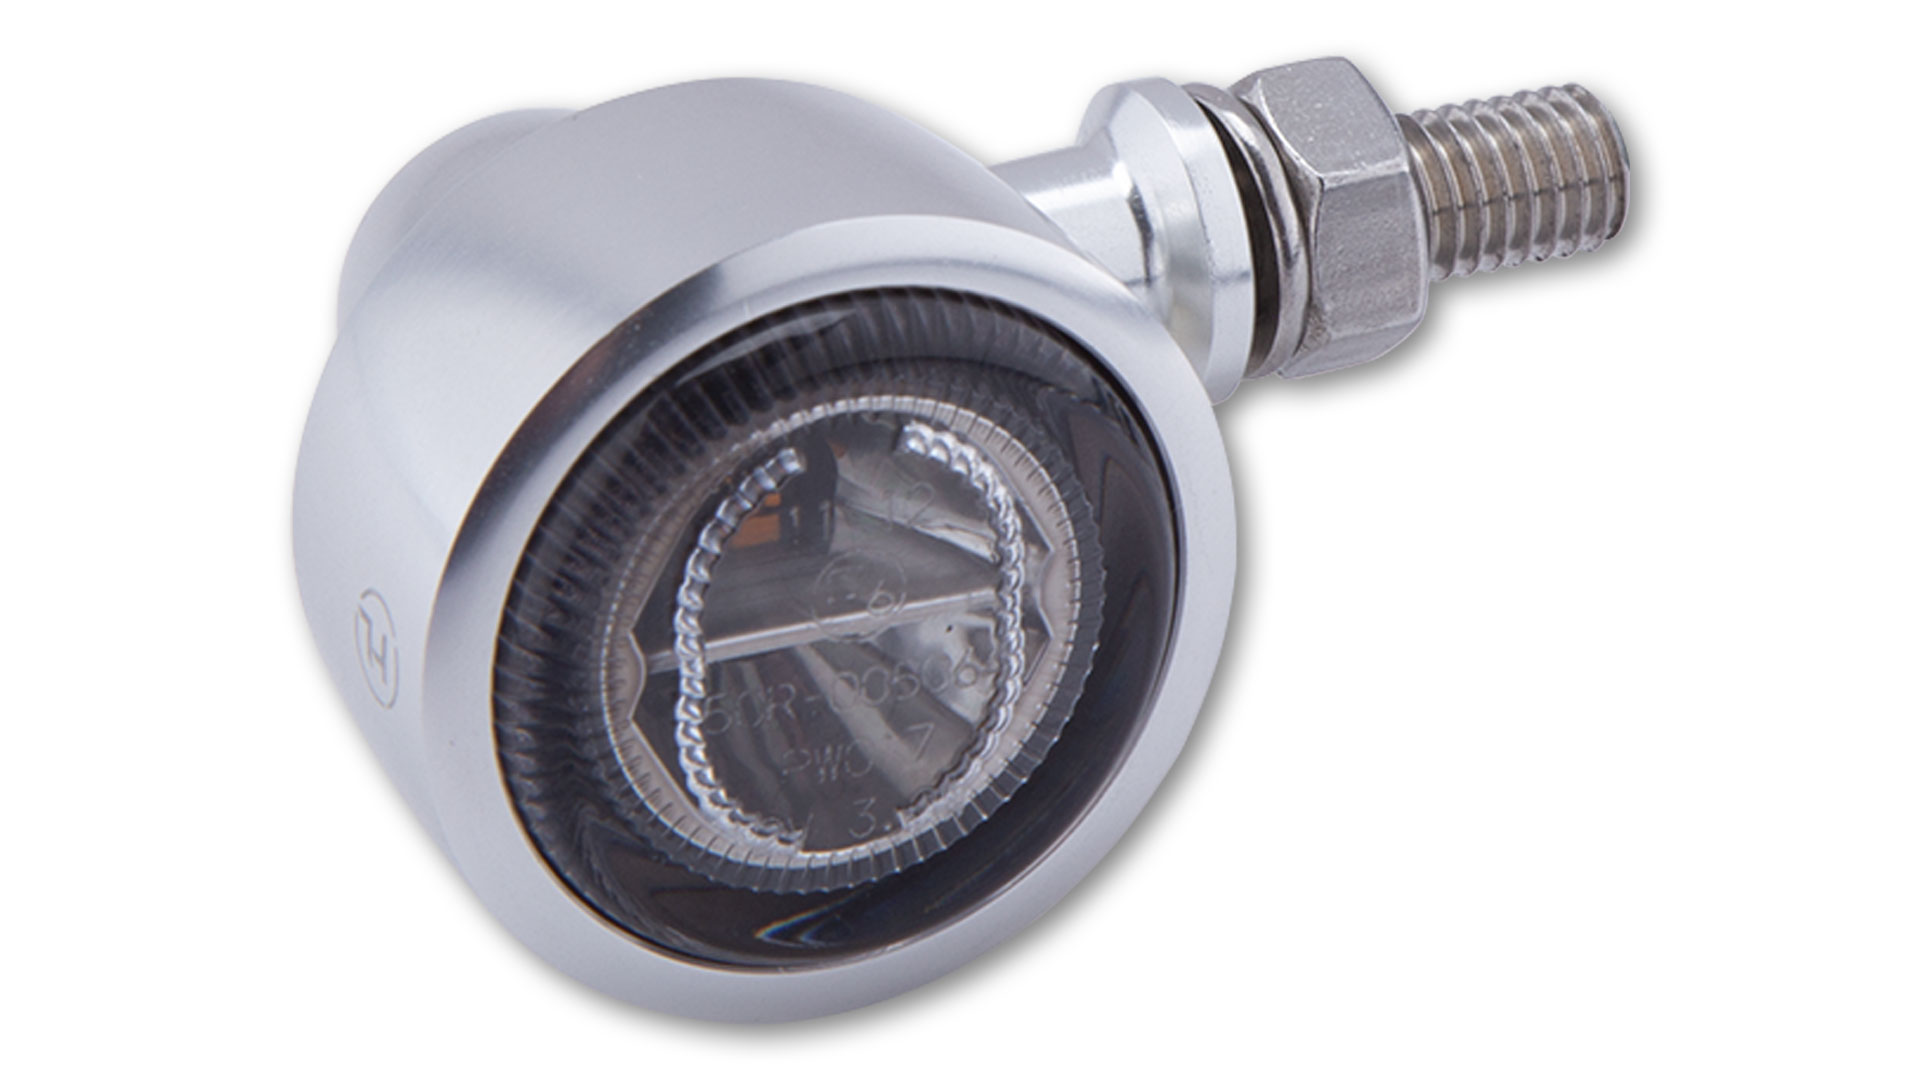 Luz trasera LED, luz de freno, intermitente CLASSIC-X1, intermitente de forma clásica con reflector tintado, disponible en plata y en negro anodizado satinado, homologado E, par.